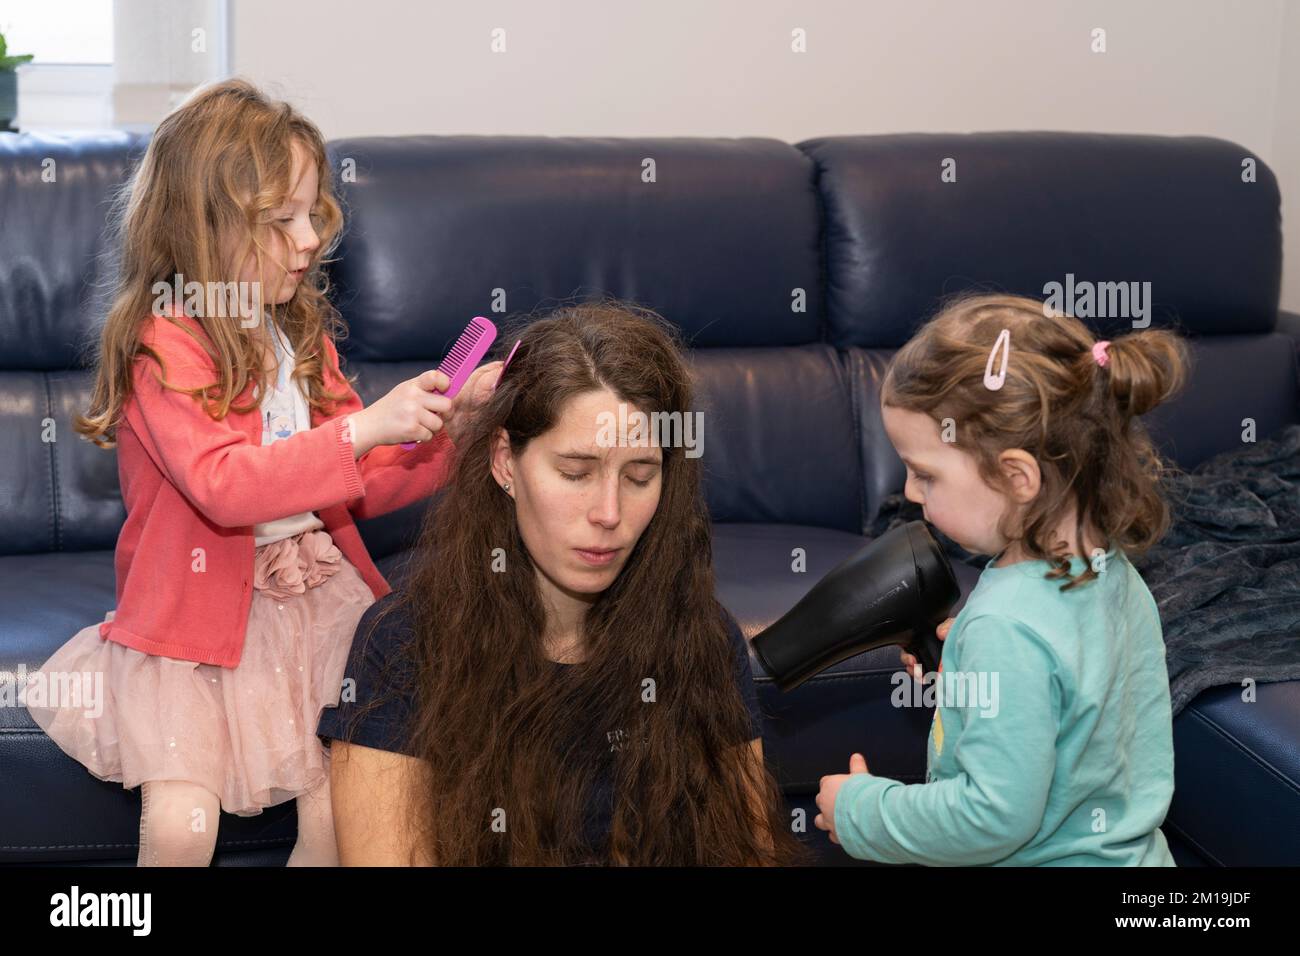 Una madre e le sue due figlie giocano e interagiscono insieme, con una ragazza che pettina i capelli bagnati e l'altra che asciuga i capelli con un asciugacapelli Foto Stock